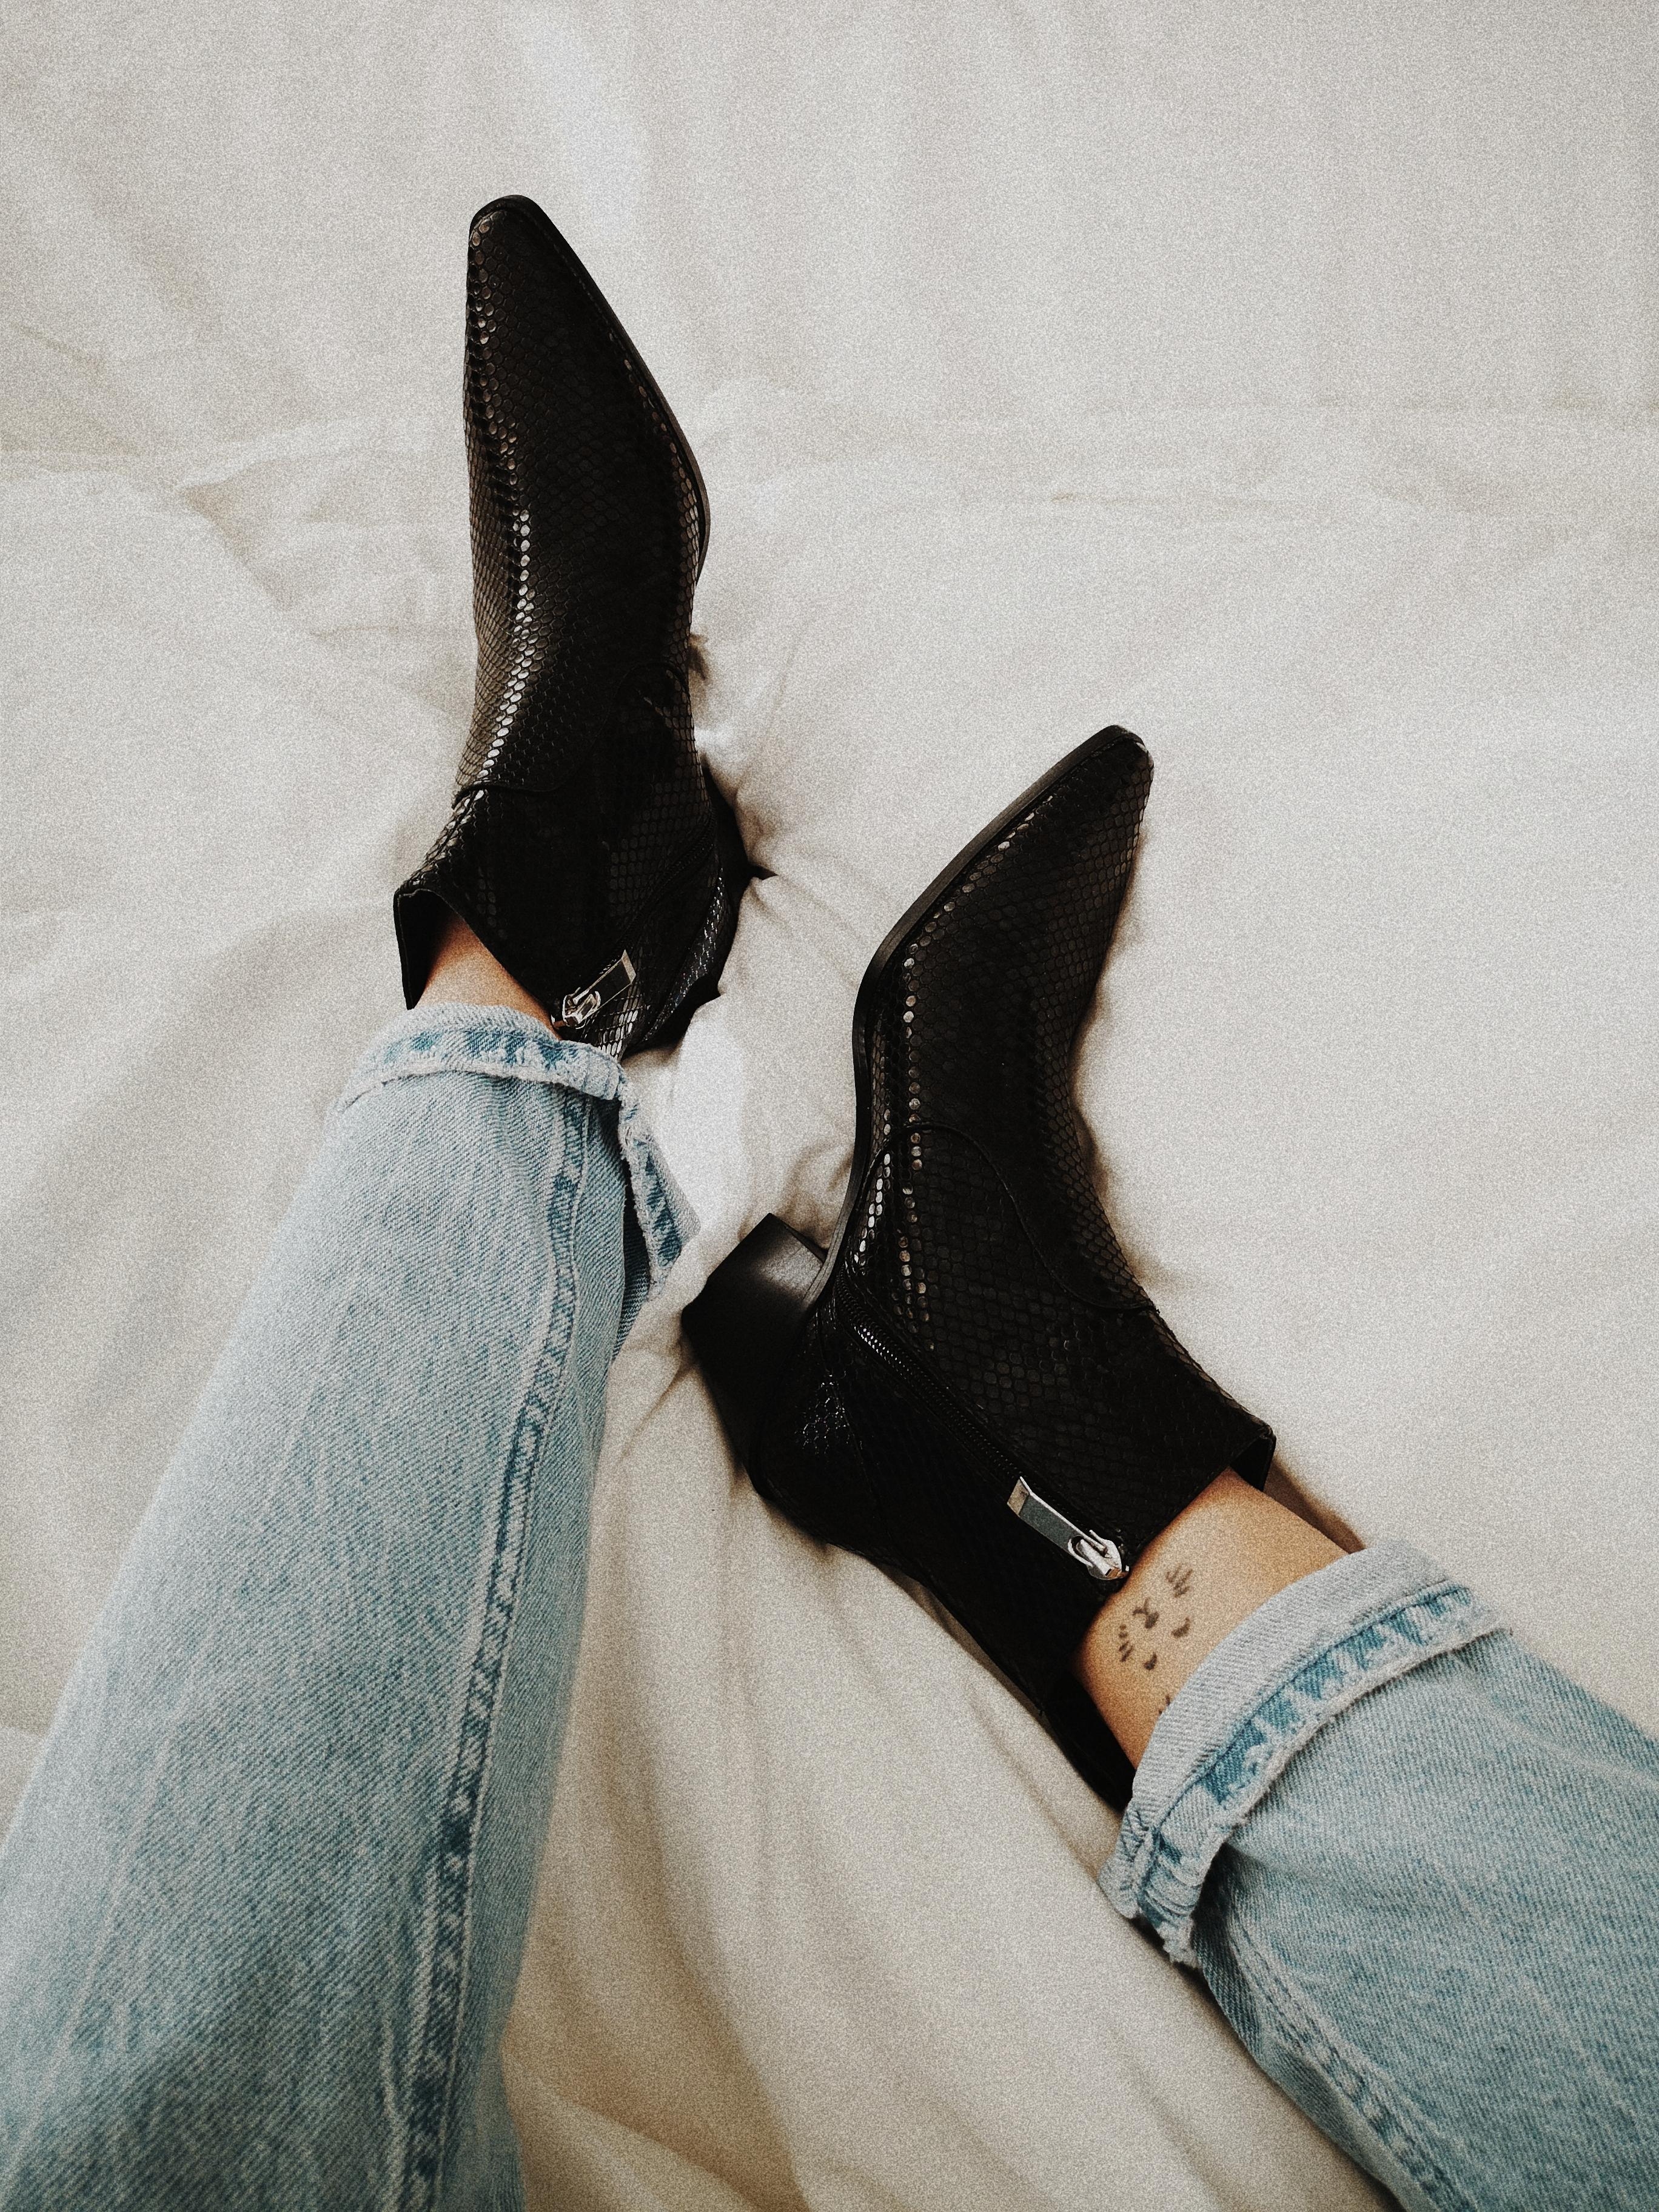 Love, neue Boots im Schlagenhaut Look
#boots #black #snakelook #fashion #inspiration #tattoo #kleinestattoo